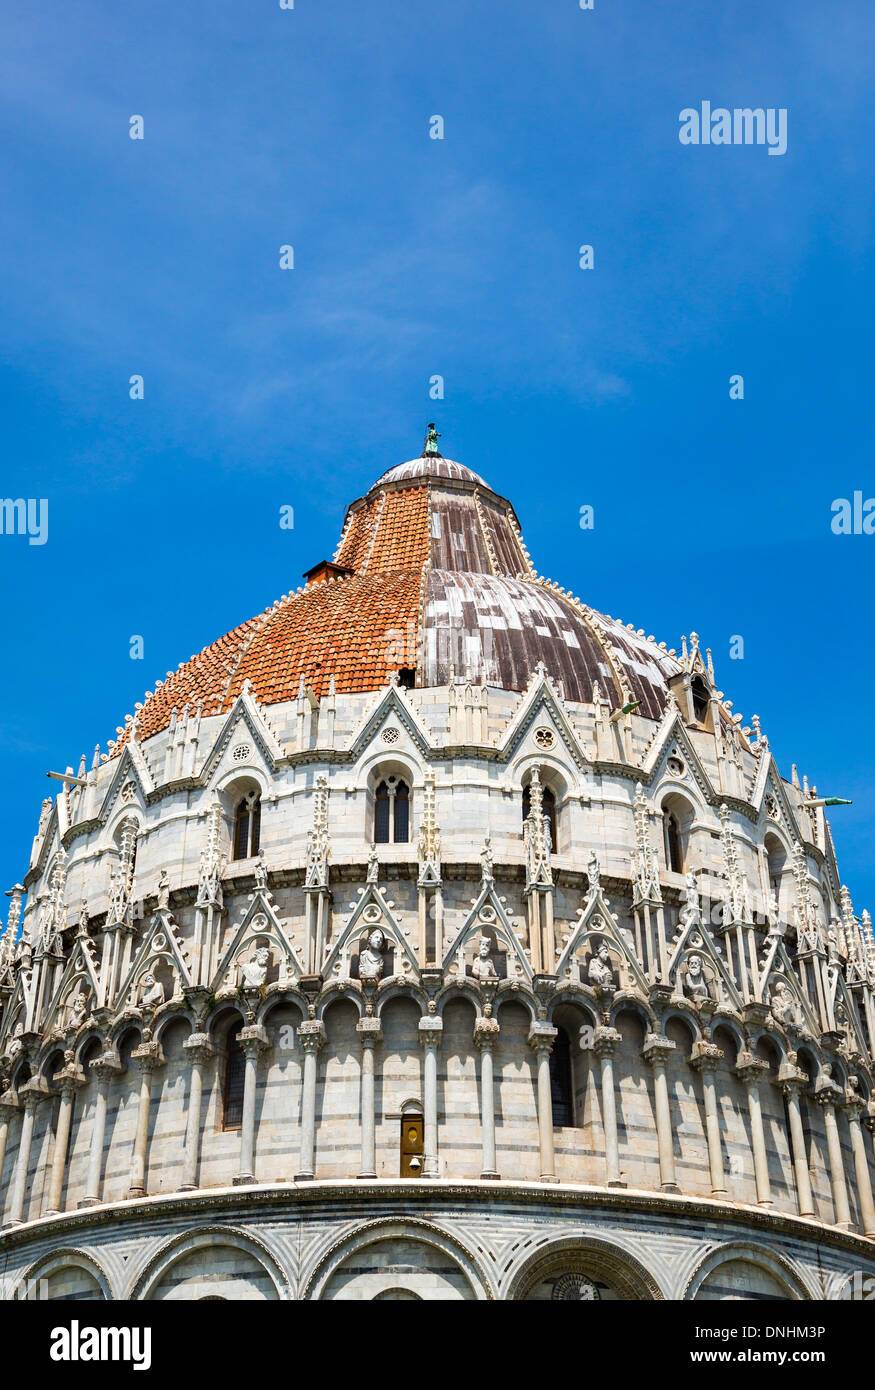 Niedrigen Winkel Ansicht einer religiösen Gebäude, Baptisterium des Heiligen Johannes, Piazza Dei Miracoli, Pisa, Toskana, Italien Stockfoto